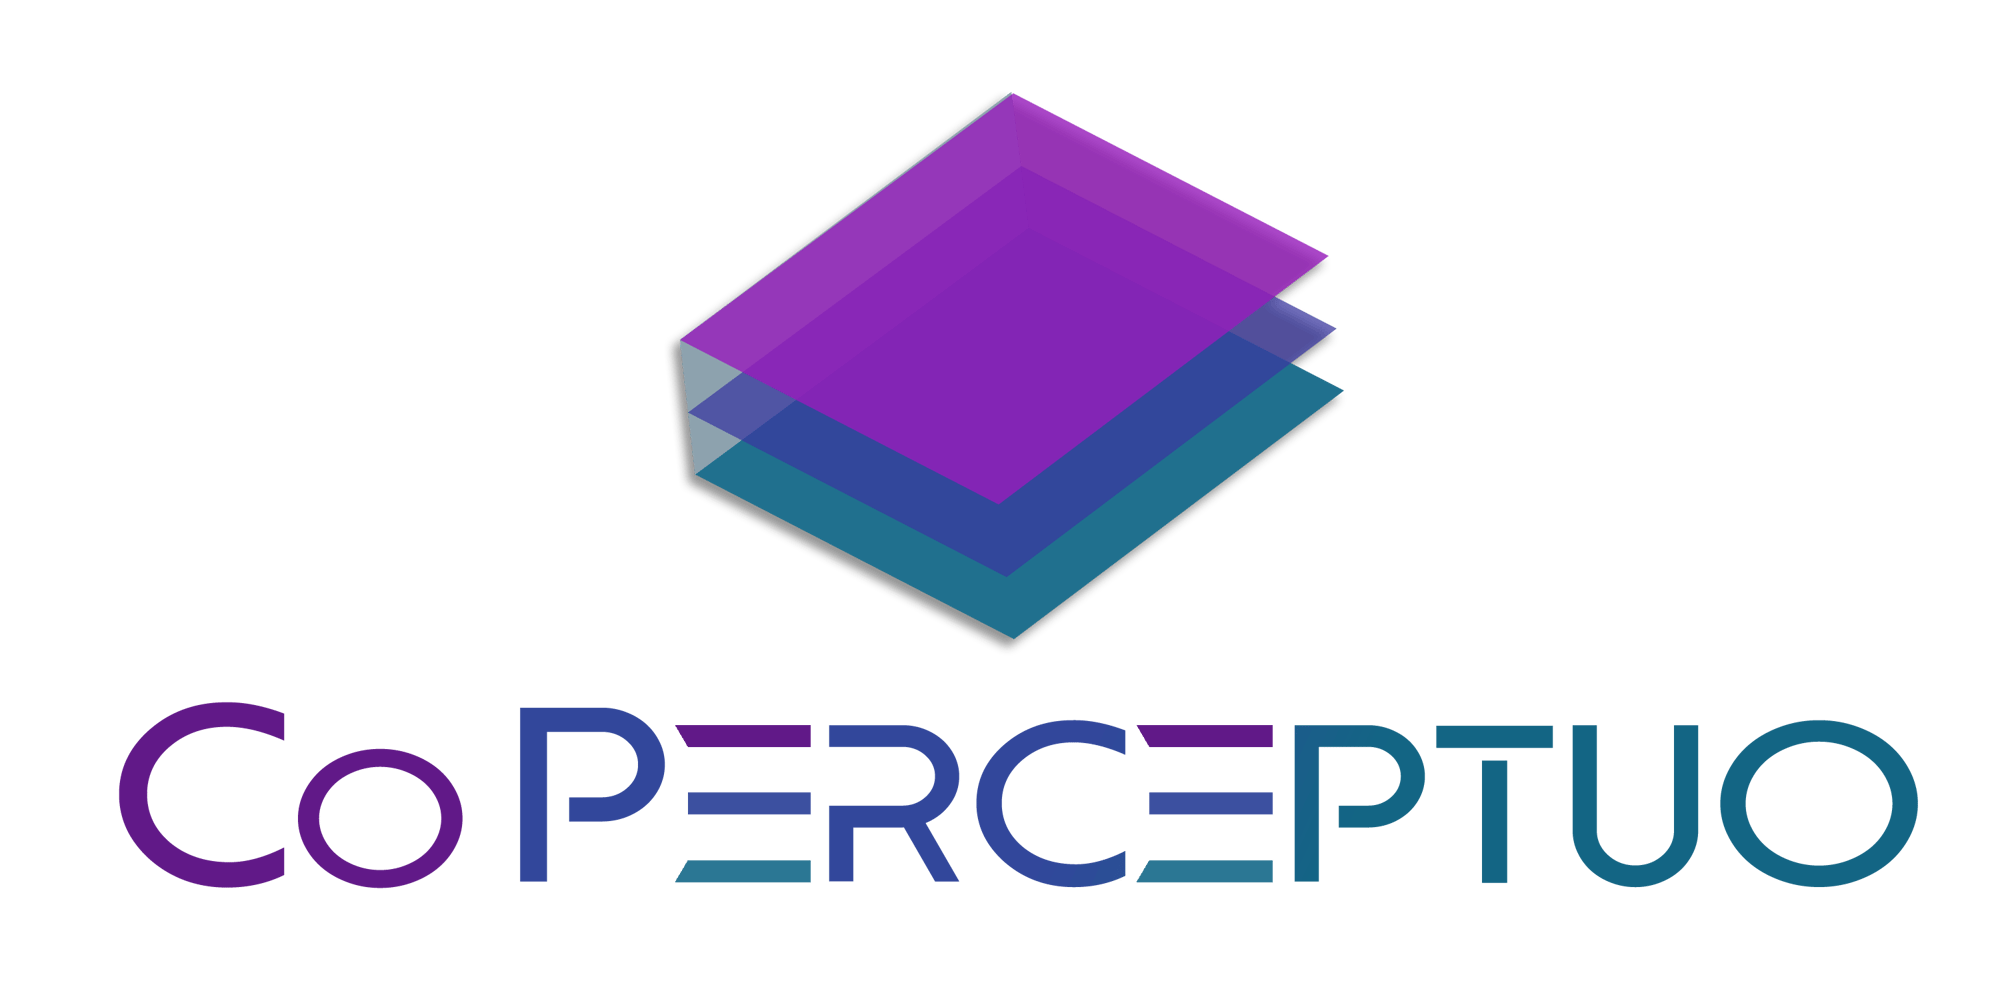 CoPerceptuo Logo full 1 NoBG-1